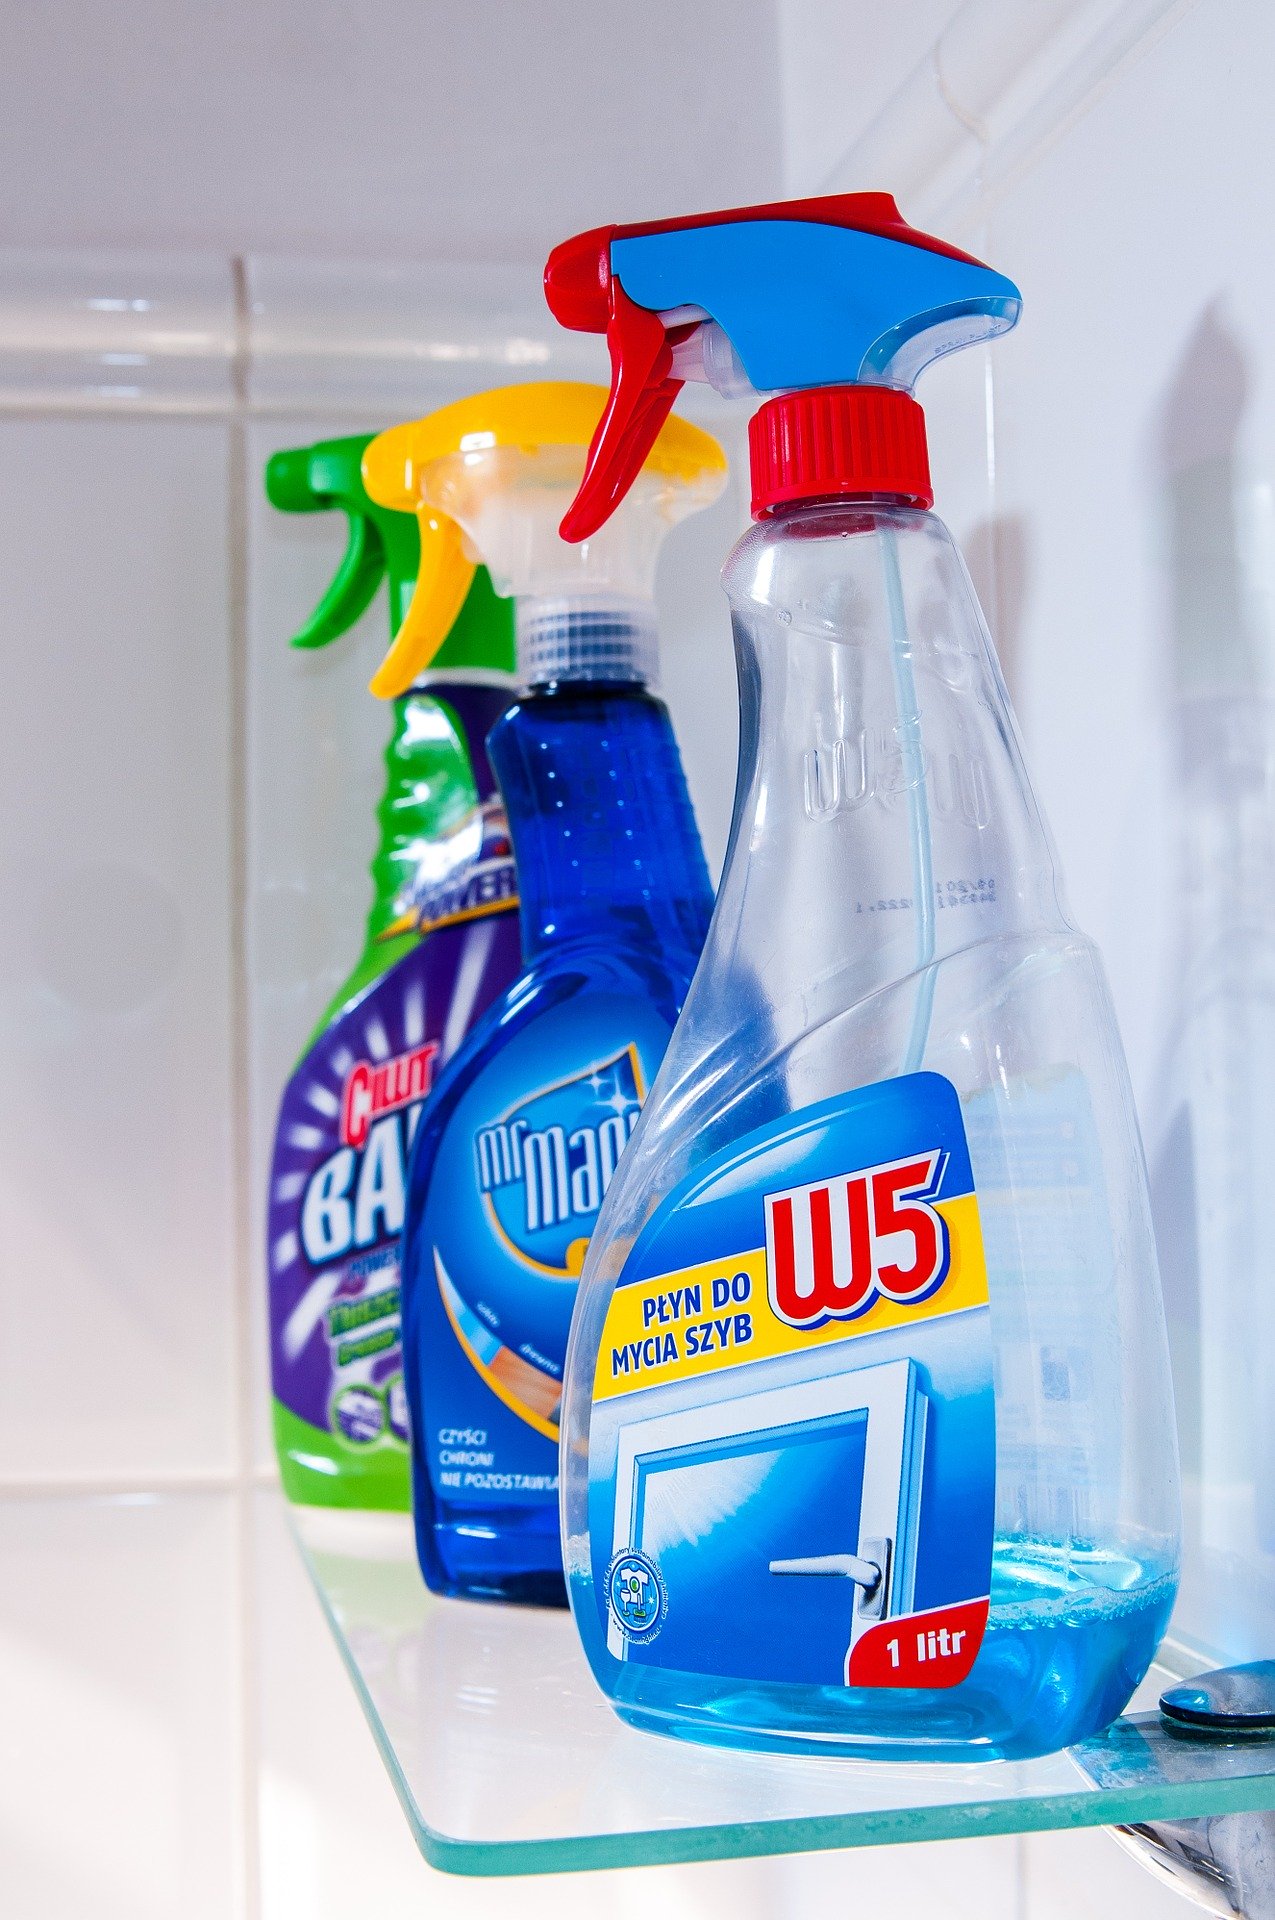 A Anvisa liberou uma lista com as composições de produtos para limpar a casa e se livrar do coronavírus (Foto: tookapic)